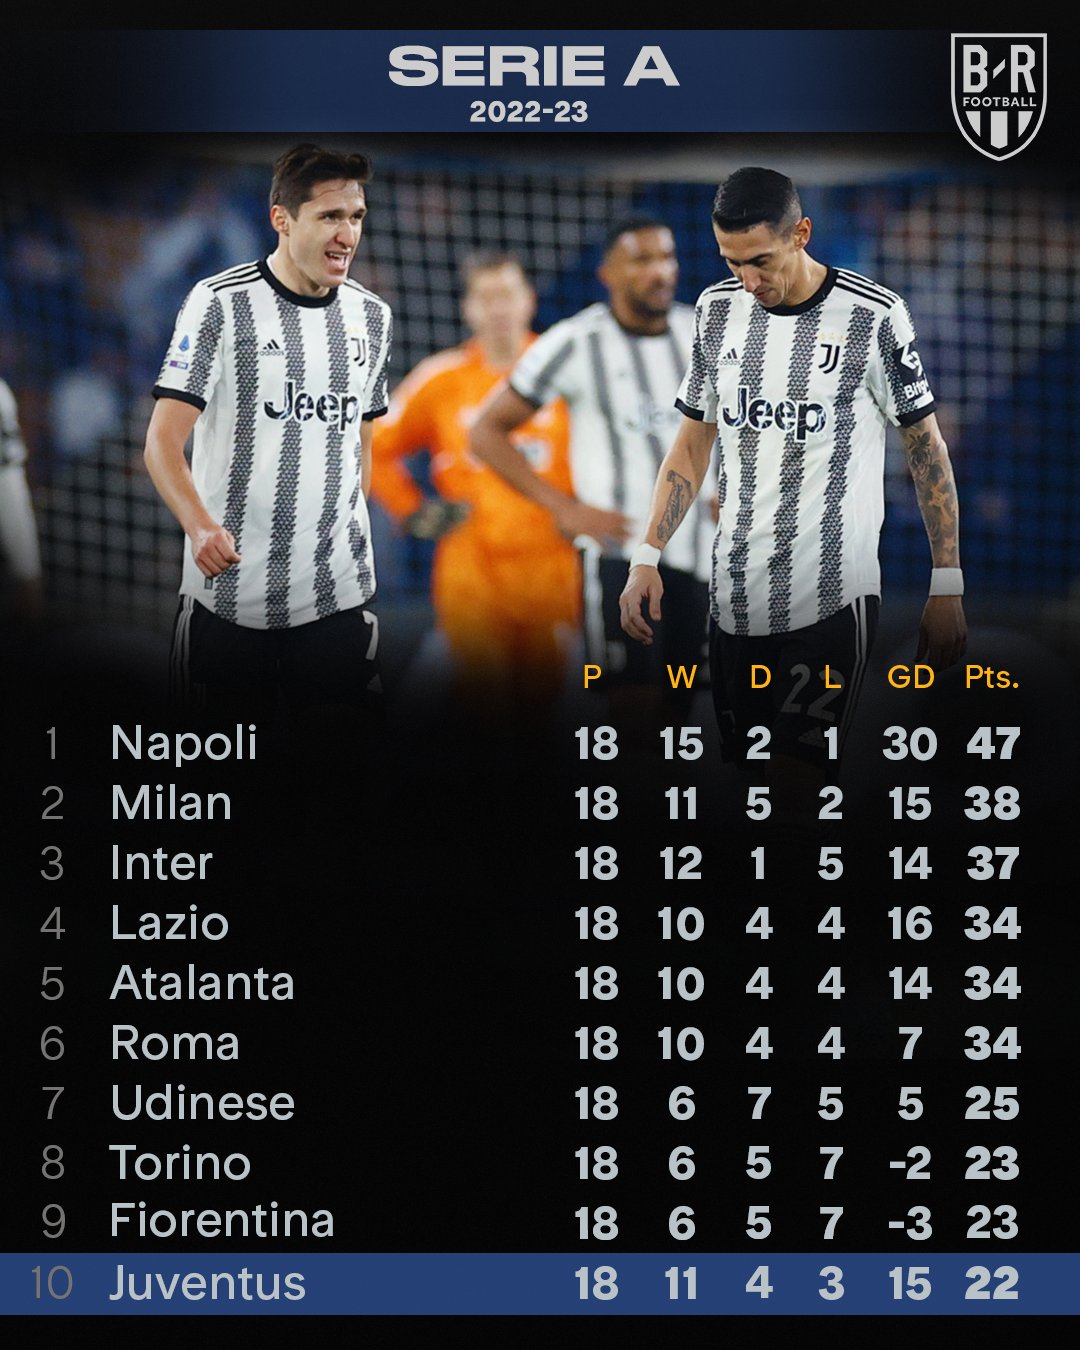 Confirmado: devolvidos 15 pontos à Juventus na tabela da Serie A - Juventus  - Jornal Record